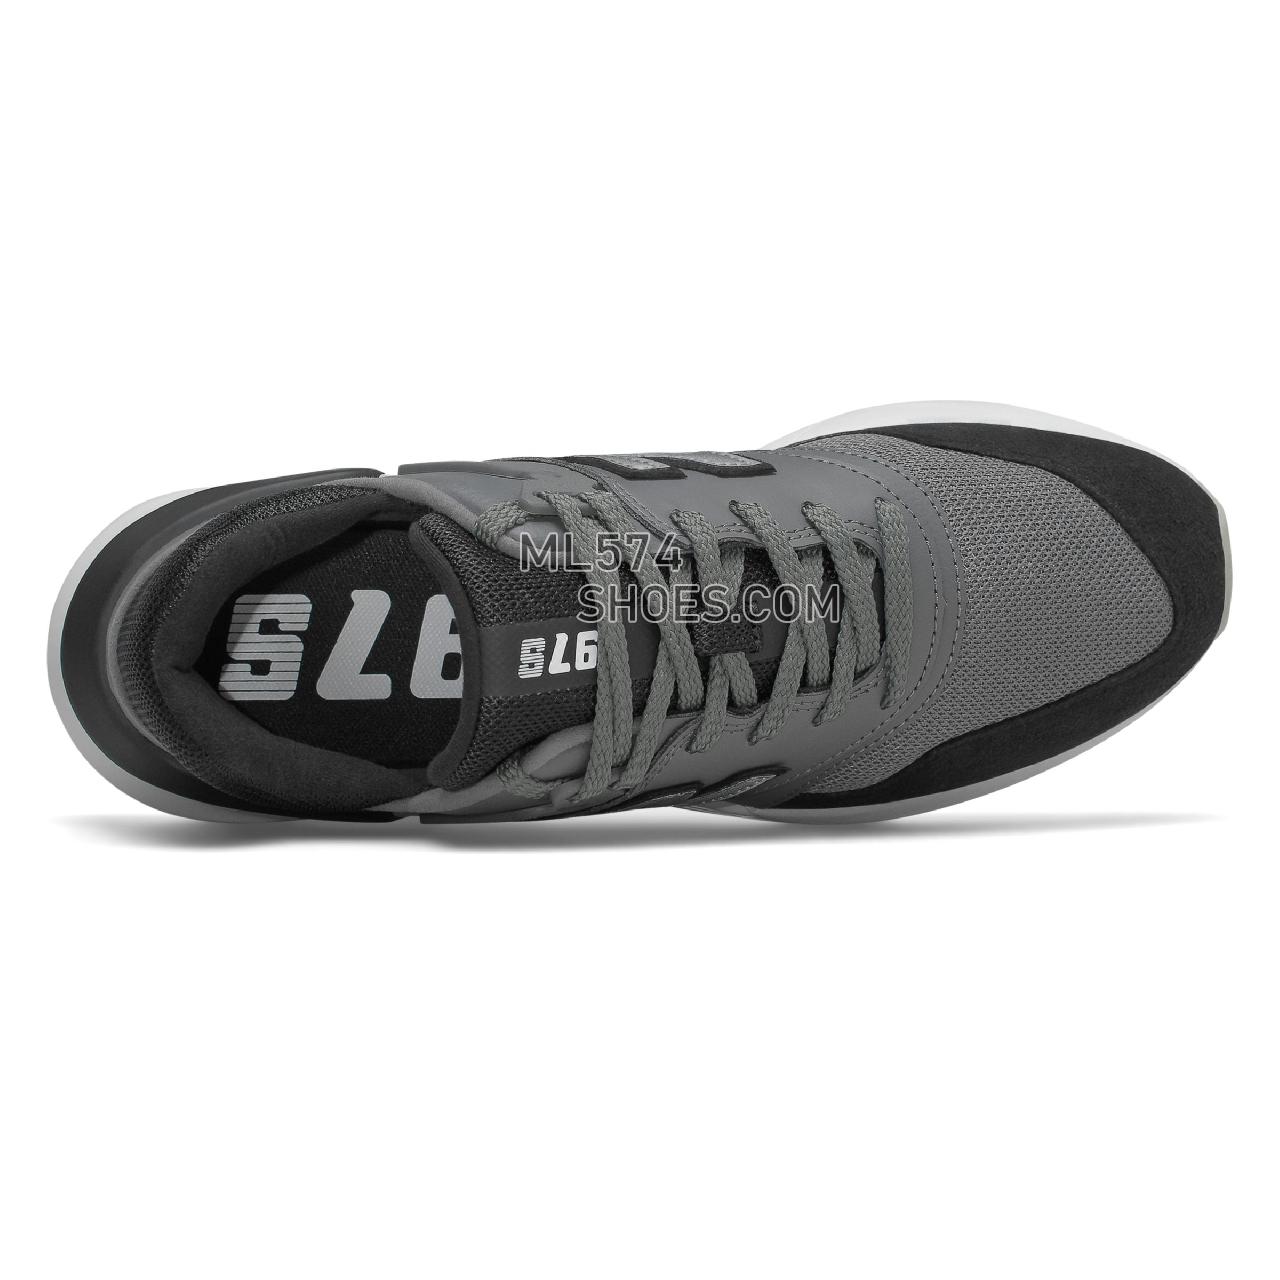 New Balance 997 Sport - Men's Sport Style Sneakers - Castlerock with Black - MS997LOK